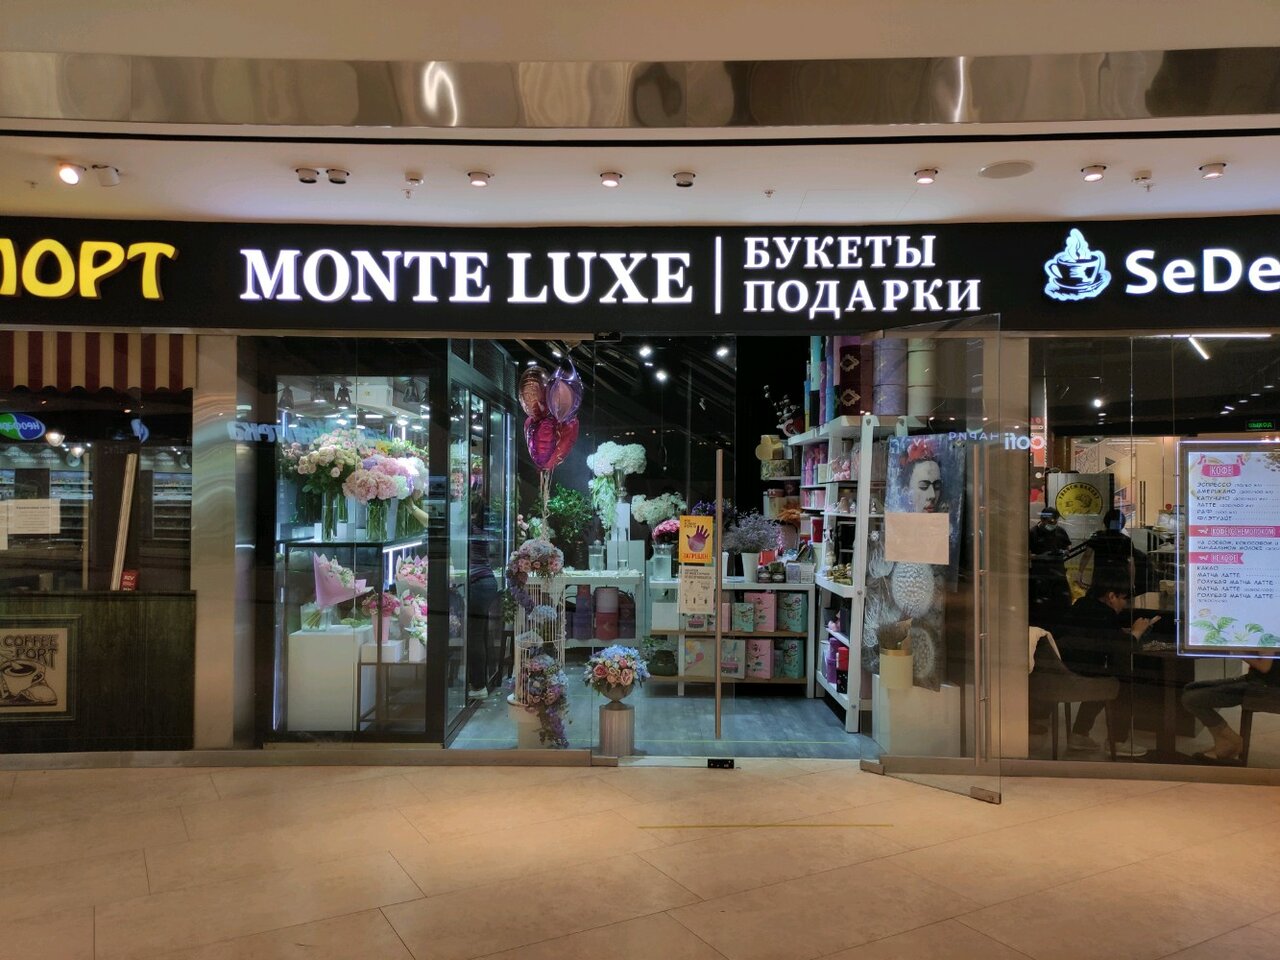 Monte lux